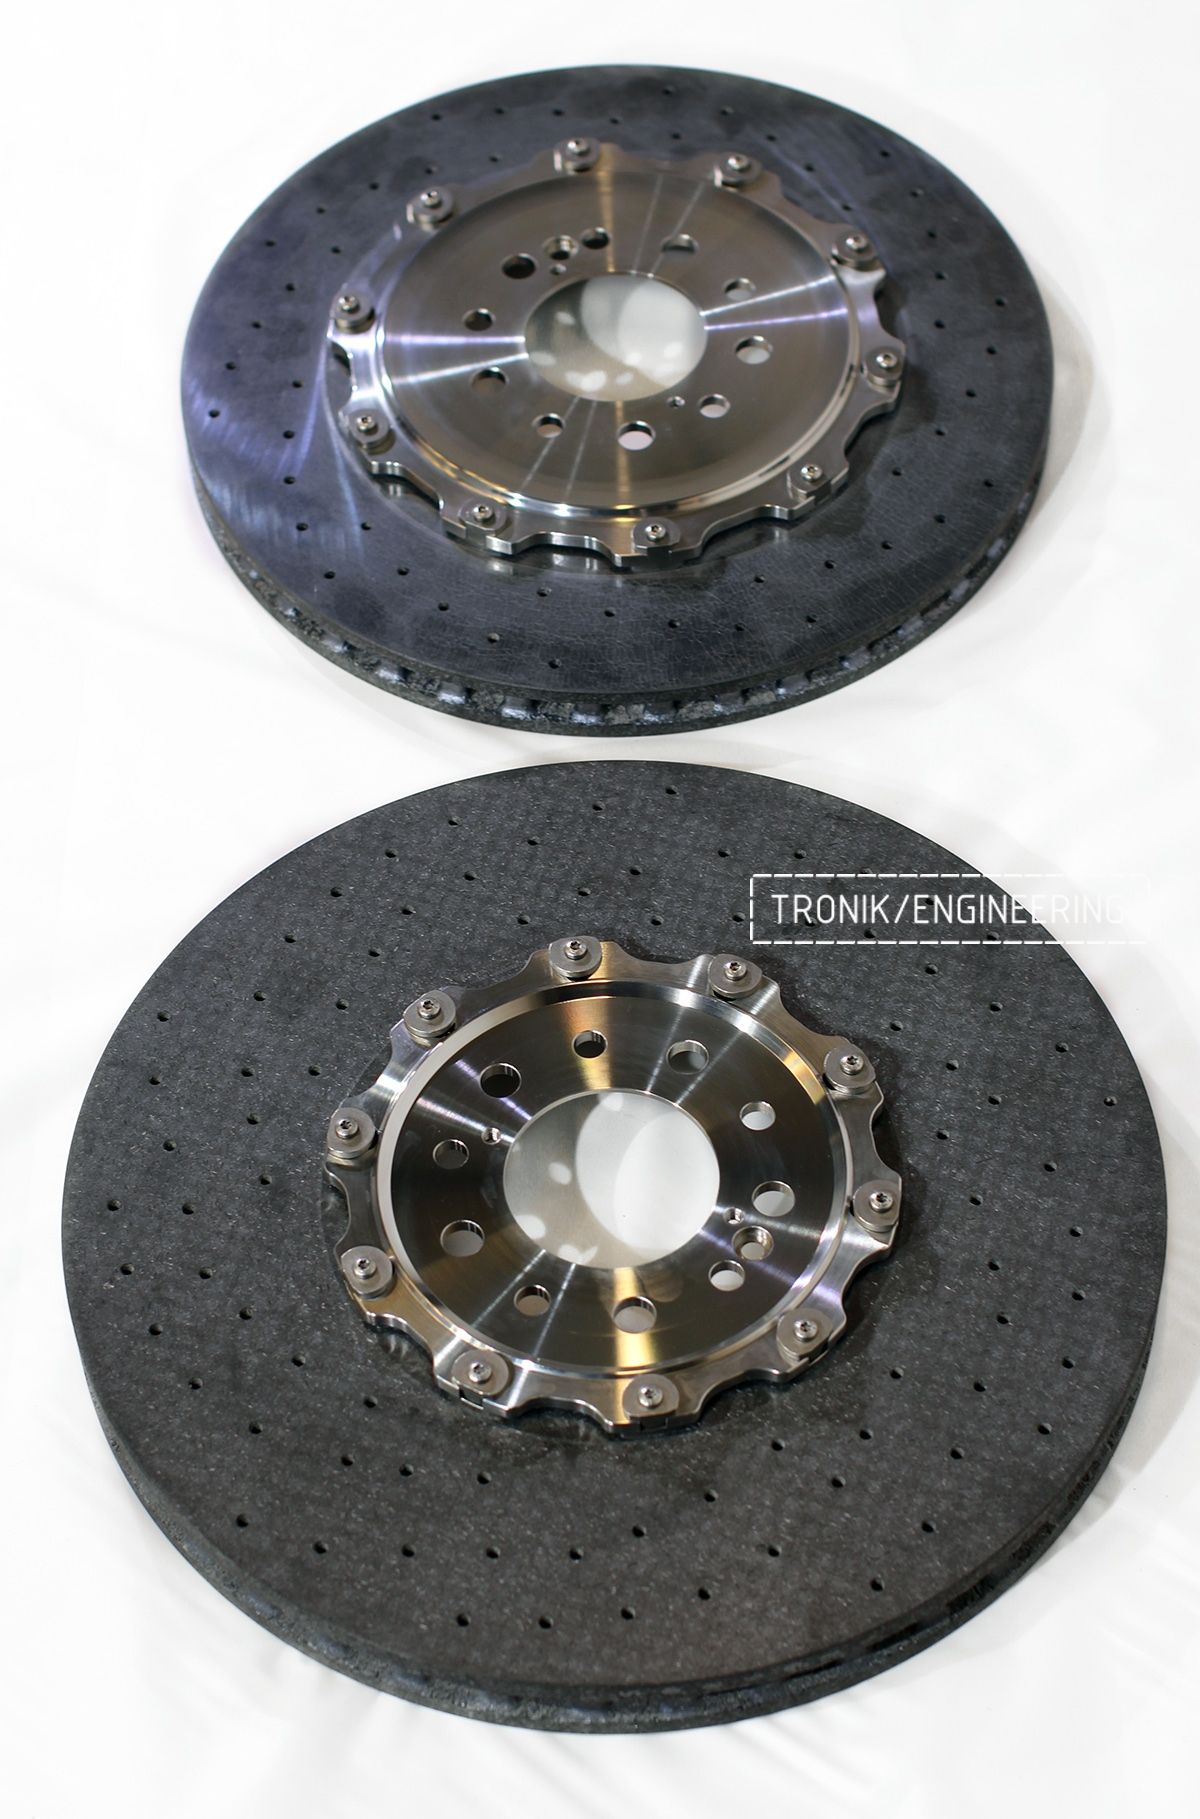 Передний и задний карбон-керамические тормозные диски. Сравниваем размеры. Фото 2